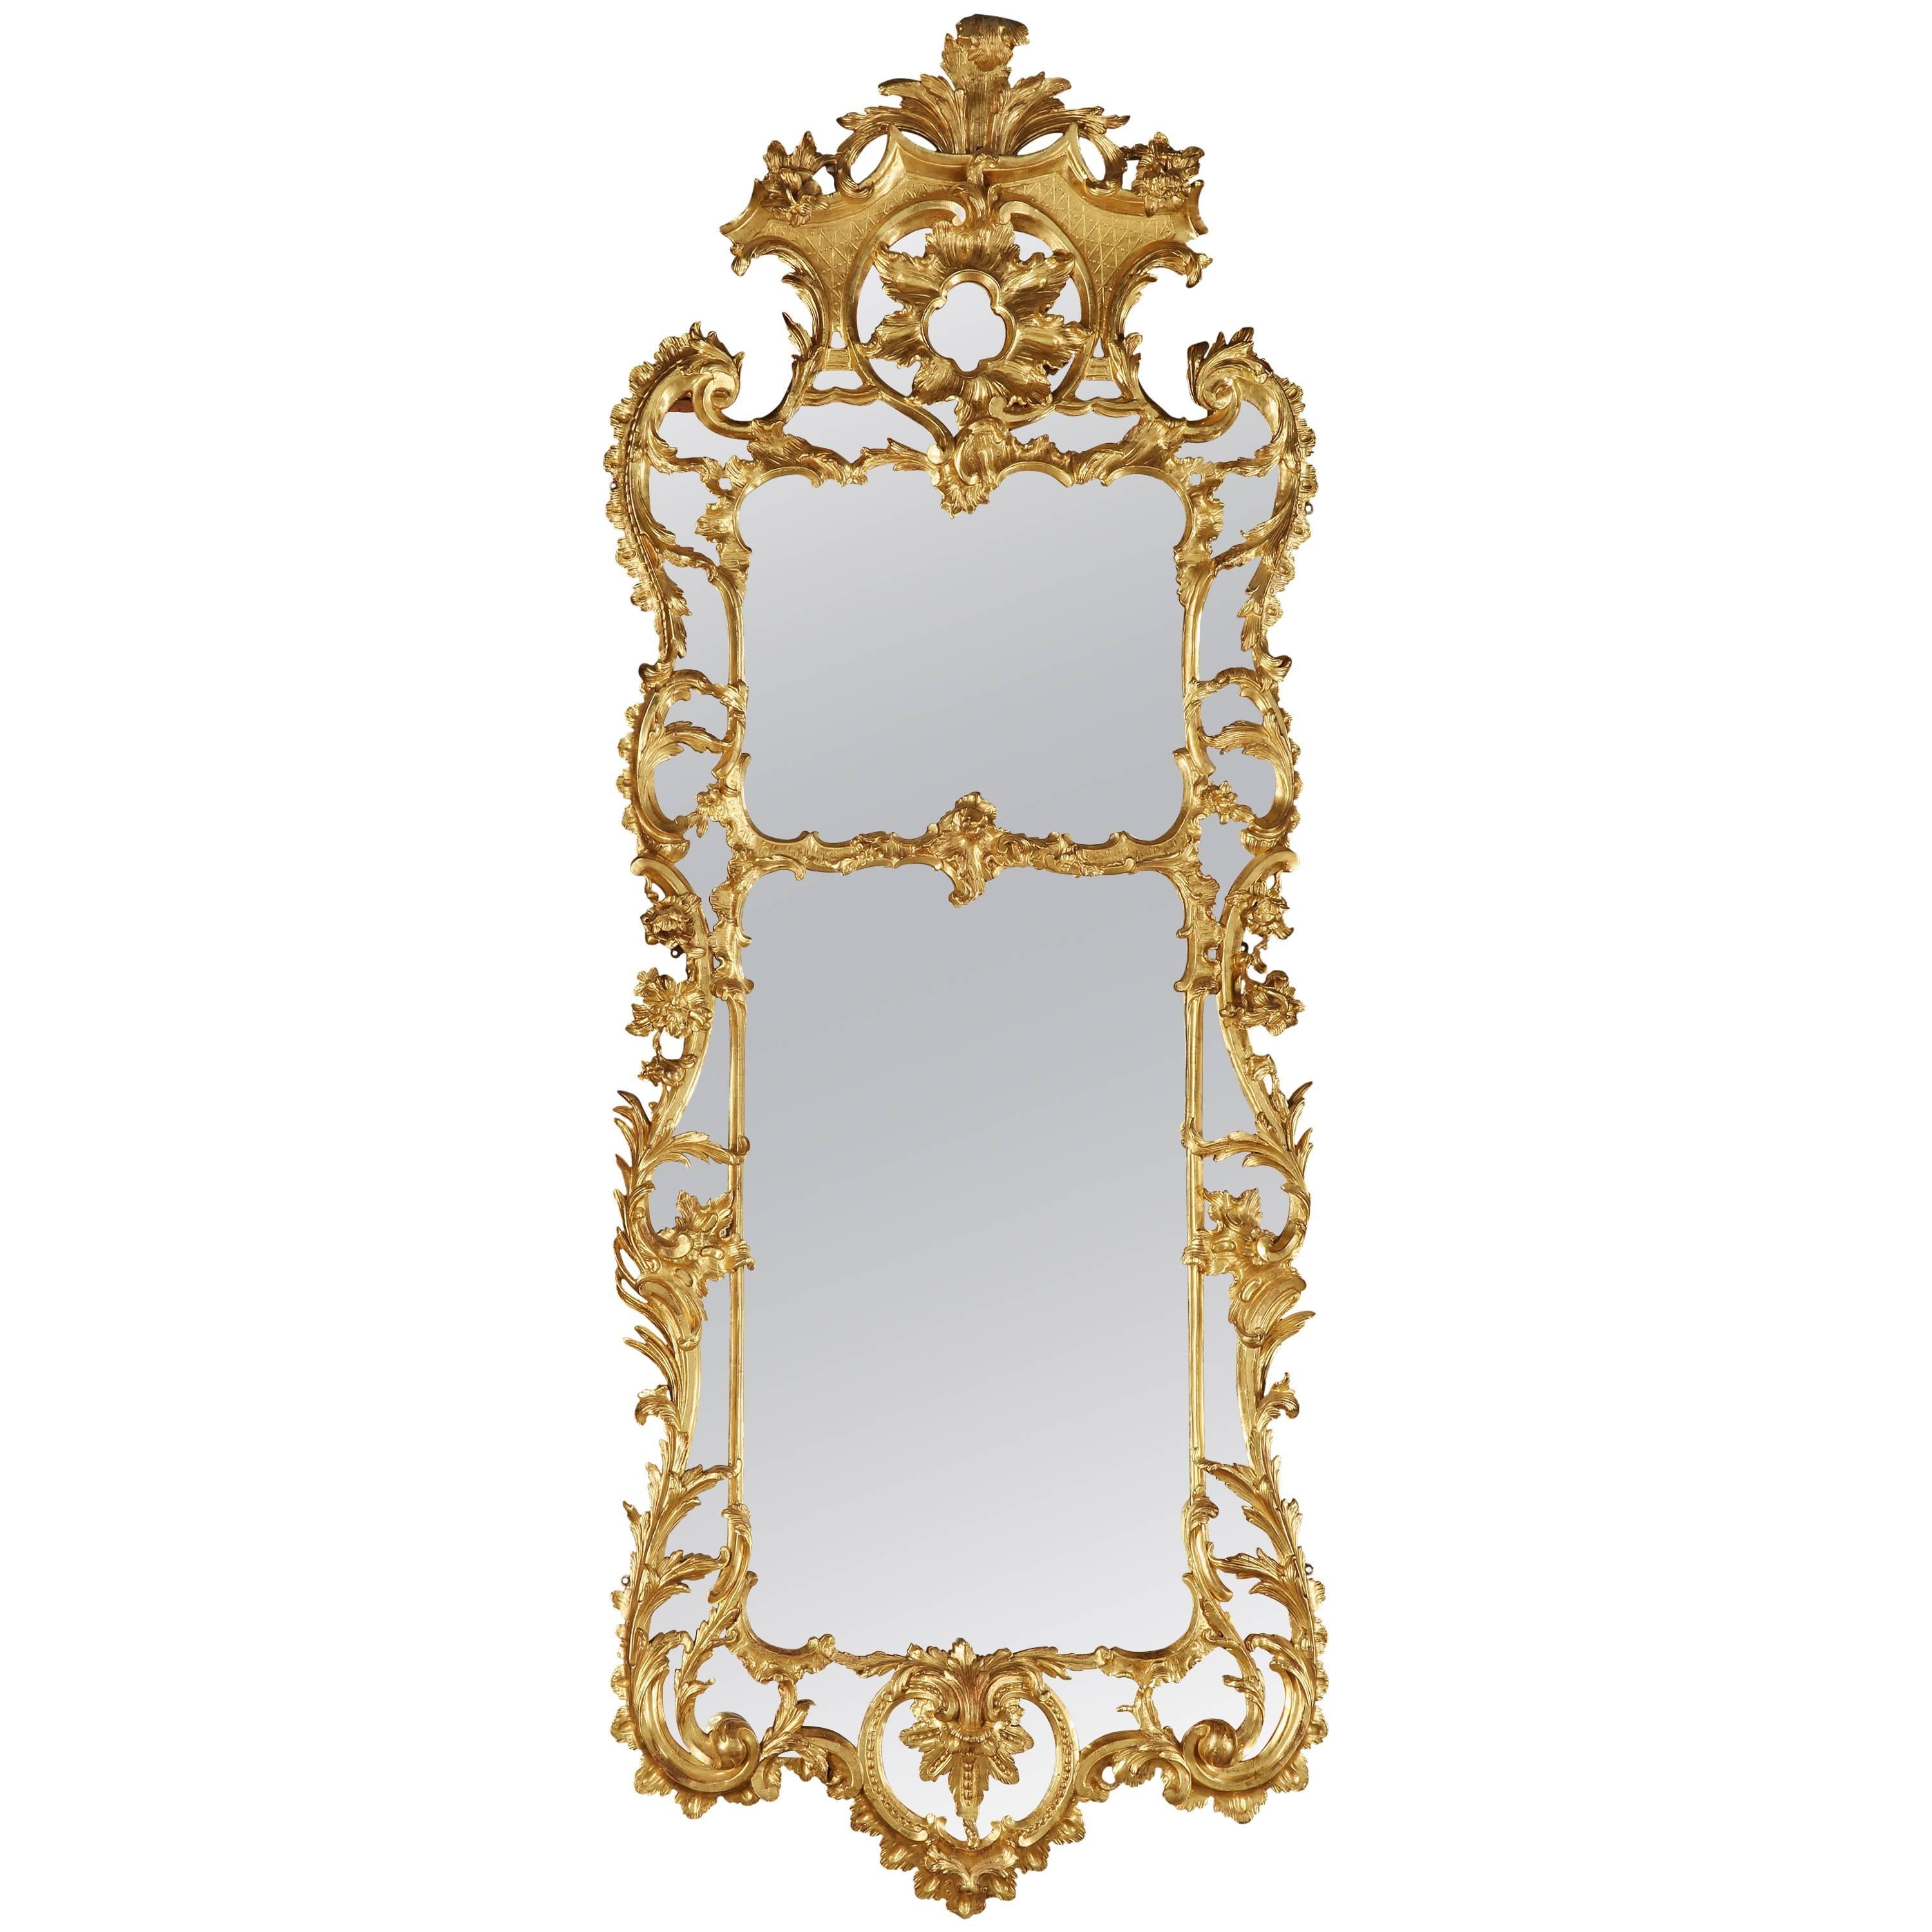 Grand miroir anglais en bois doré du XVIIIe siècle de style